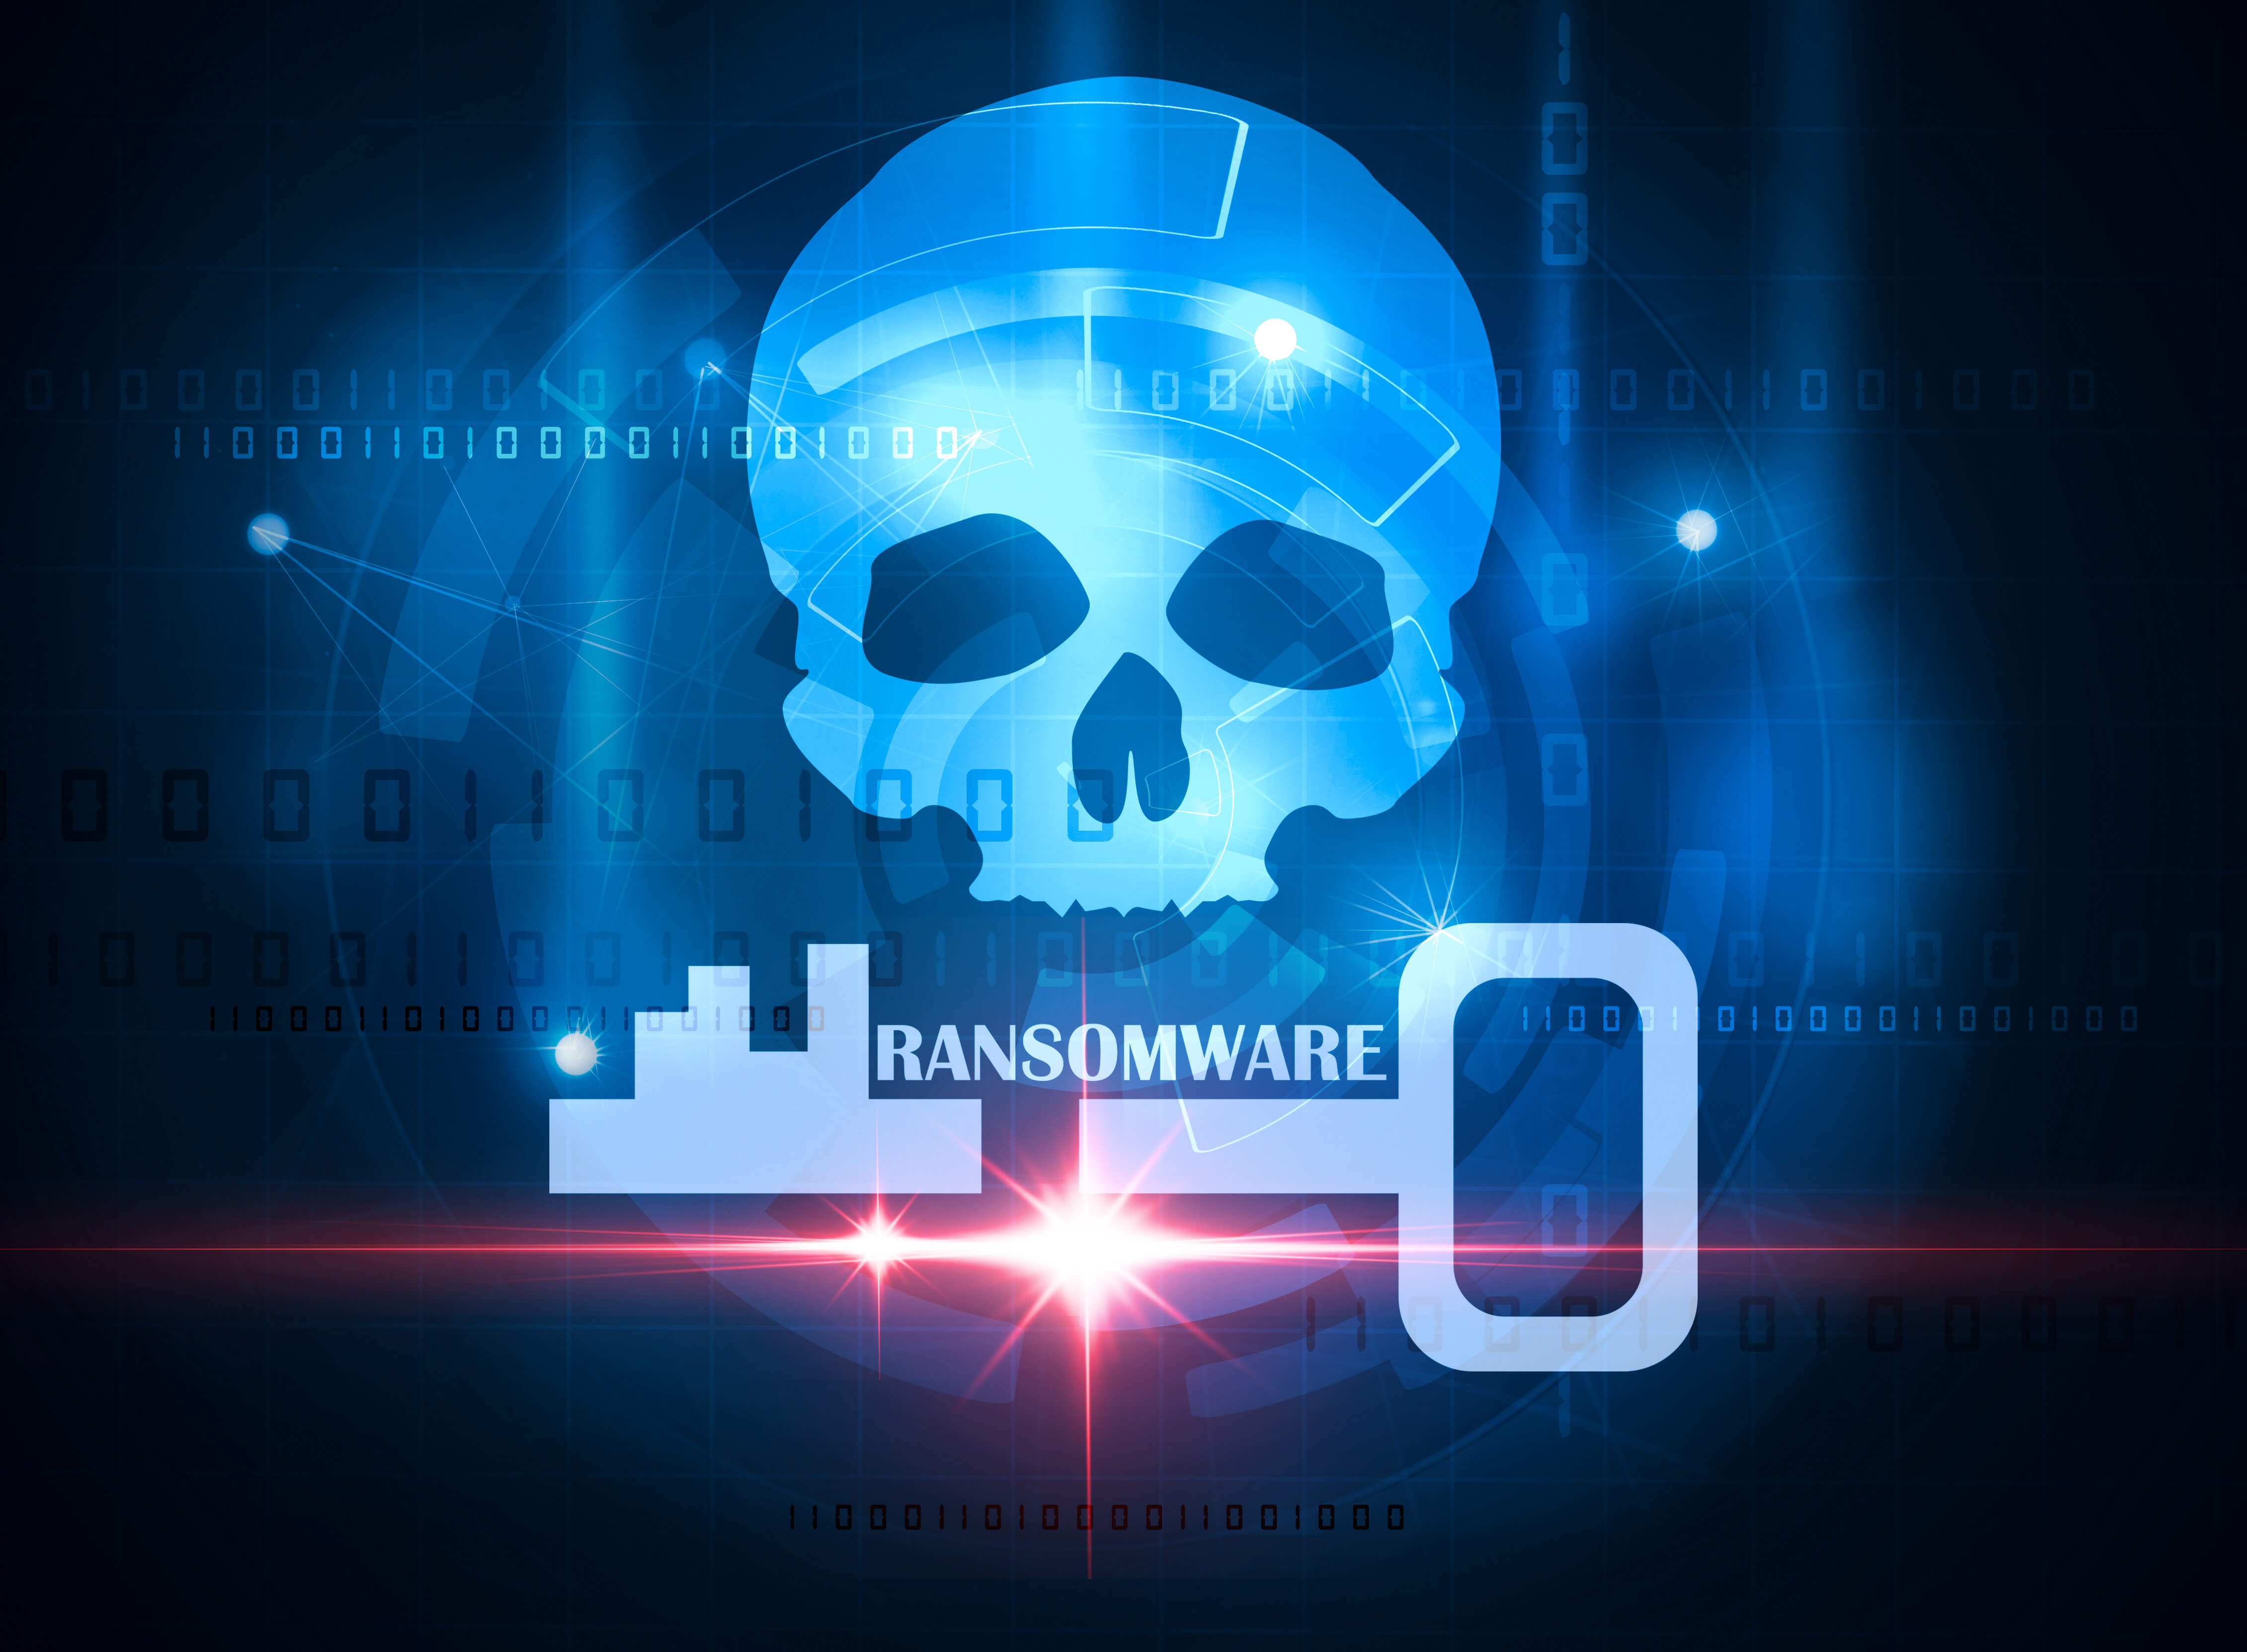 Ransomware attacks concept